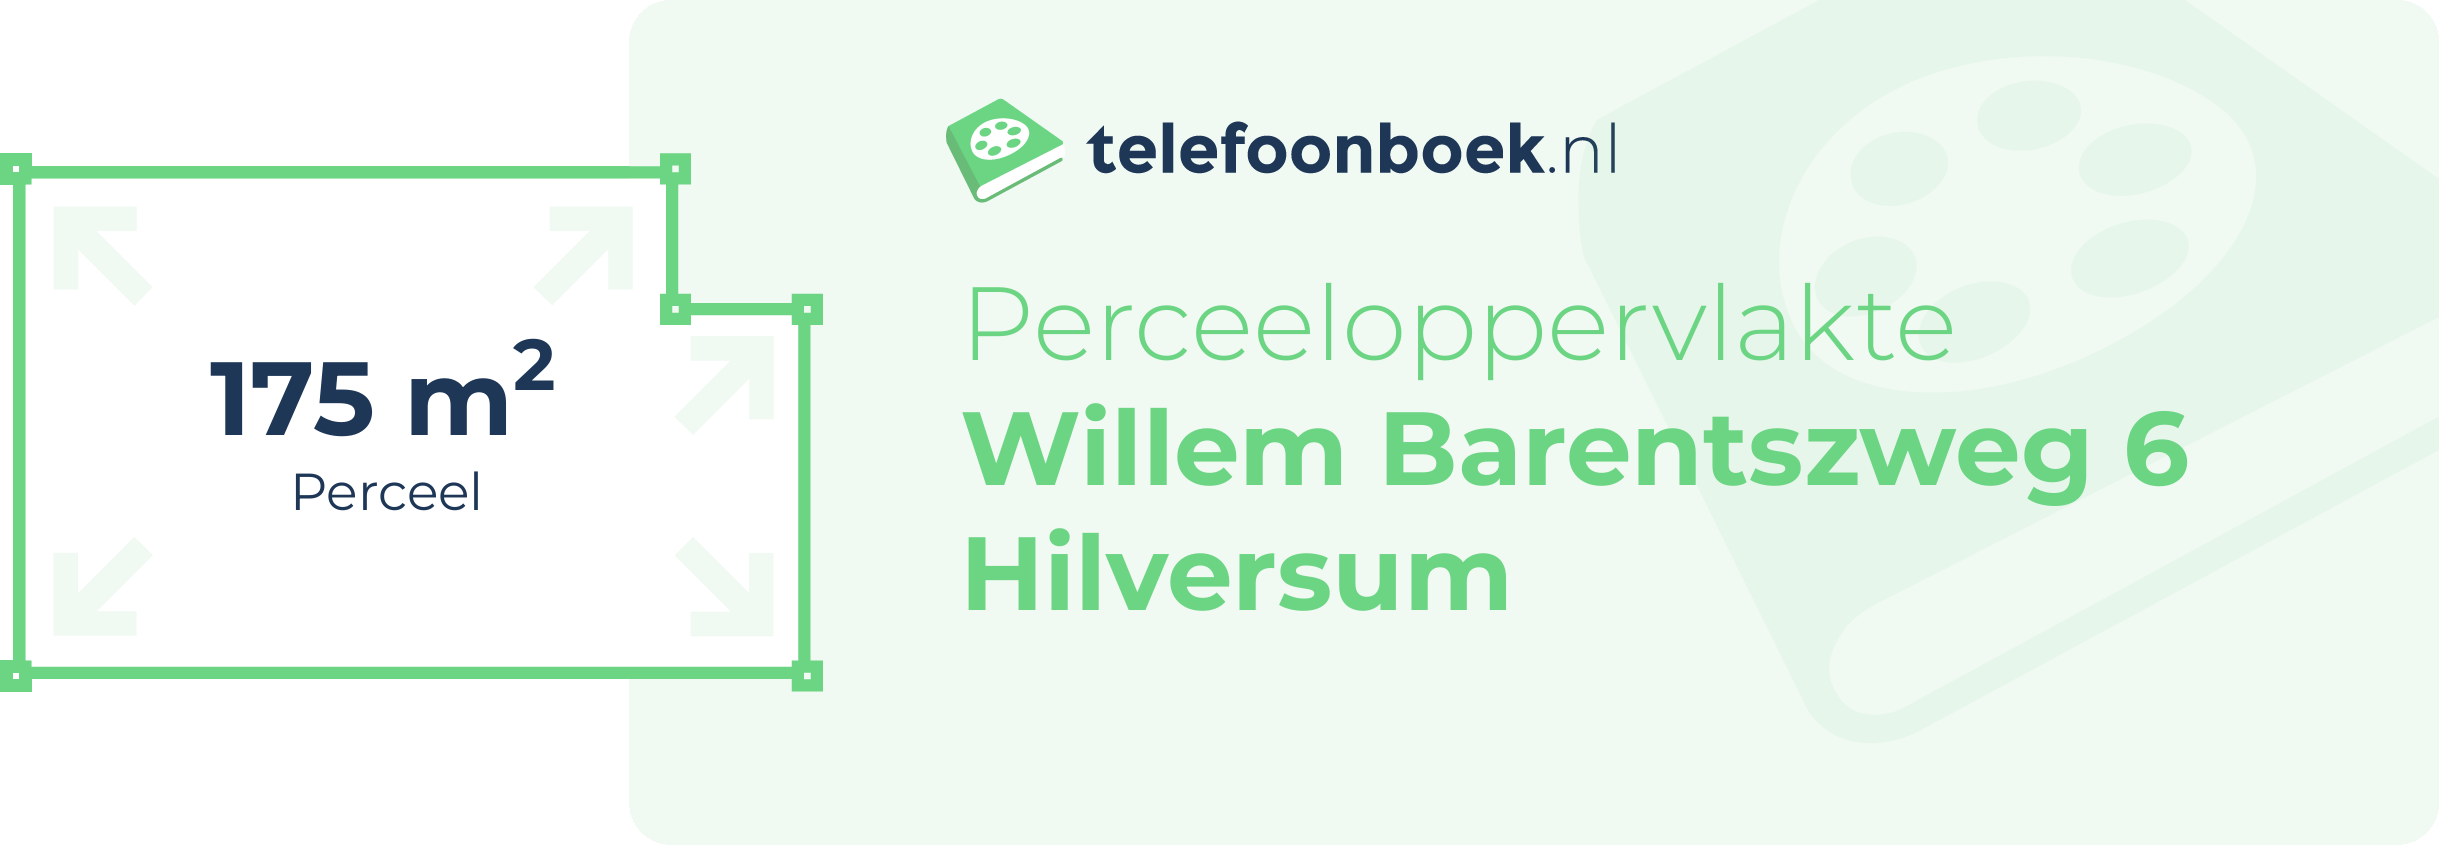 Perceeloppervlakte Willem Barentszweg 6 Hilversum